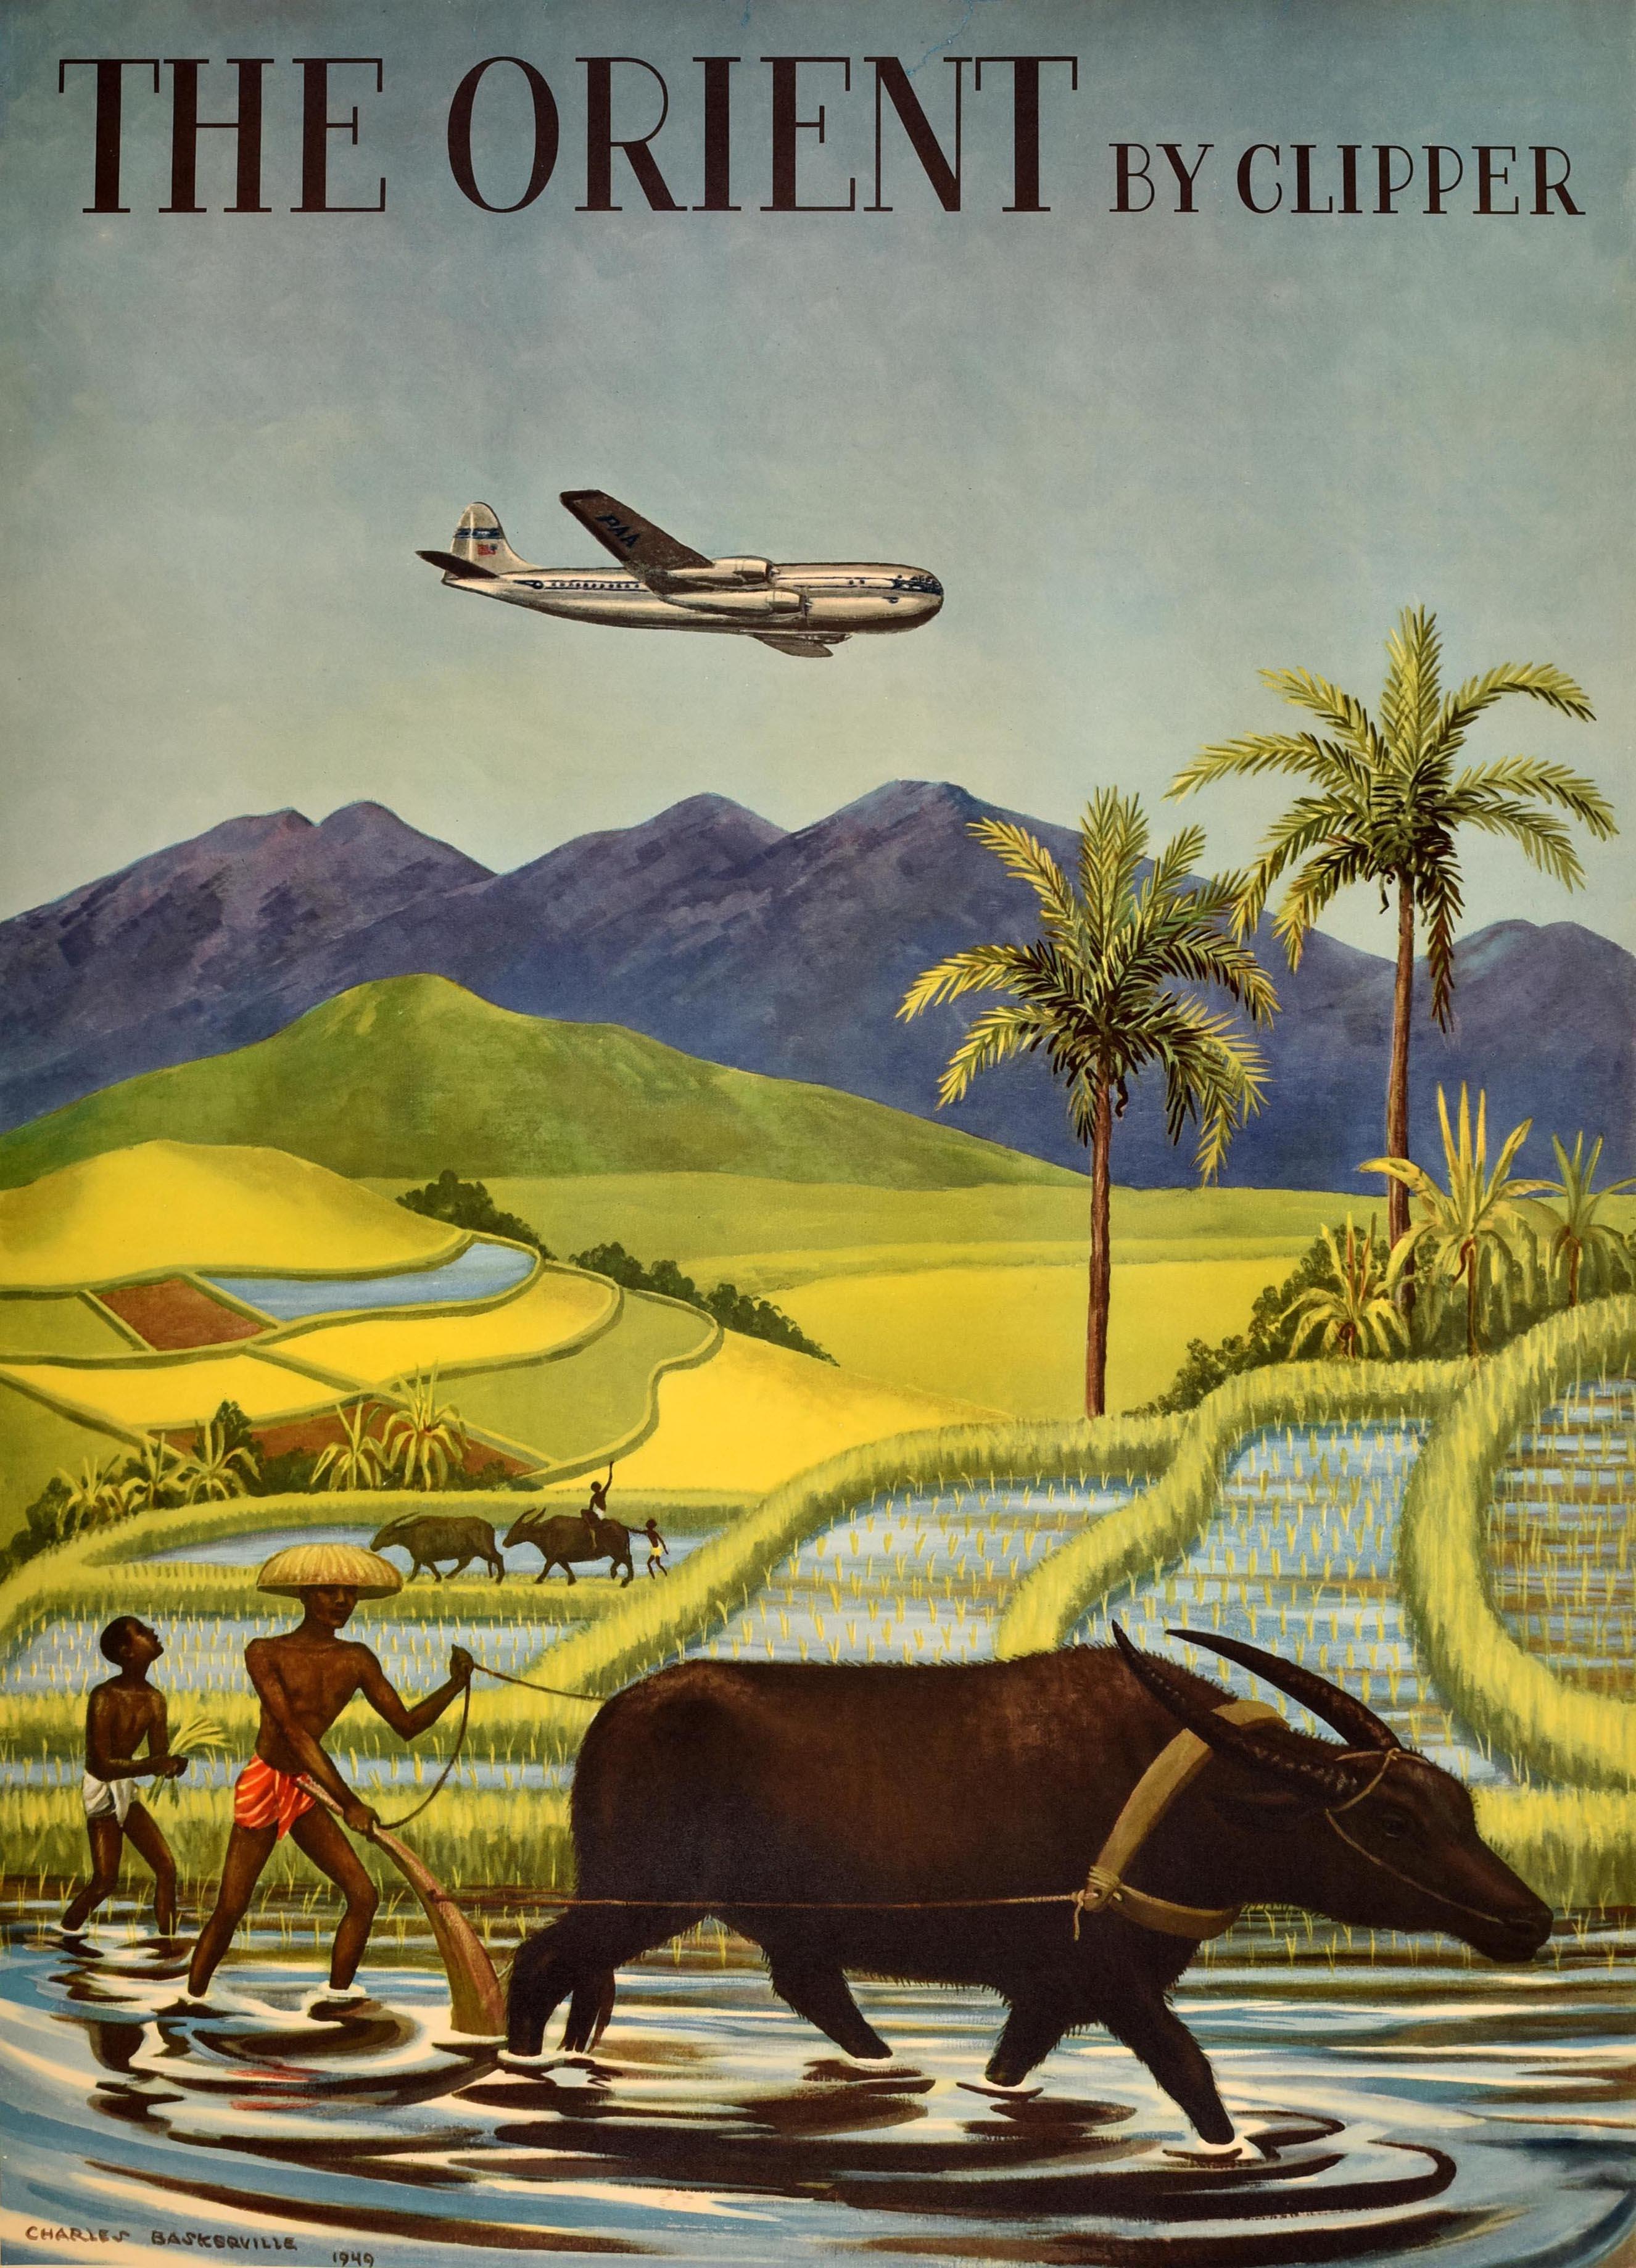 Affiche originale de voyage en Asie pour The Orient by Clipper Pan American World Airways The World's Most Experienced Airline (L'Orient par Clipper Pan American World Airways, la compagnie aérienne la plus expérimentée du monde), illustrée par